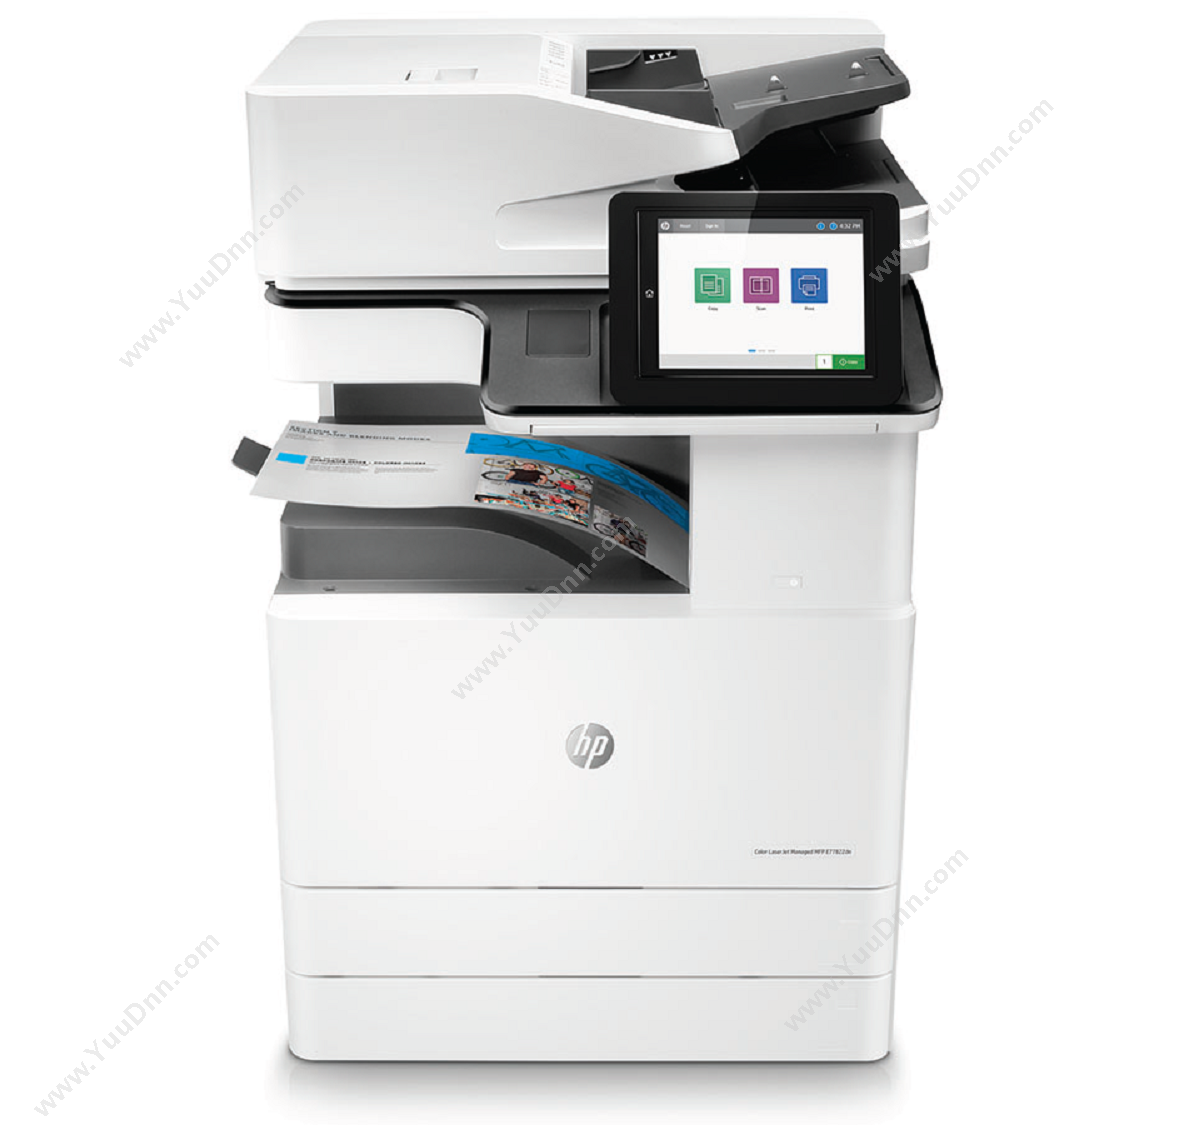 惠普 HP A3X3A78AE77822dn 激光复合打印机